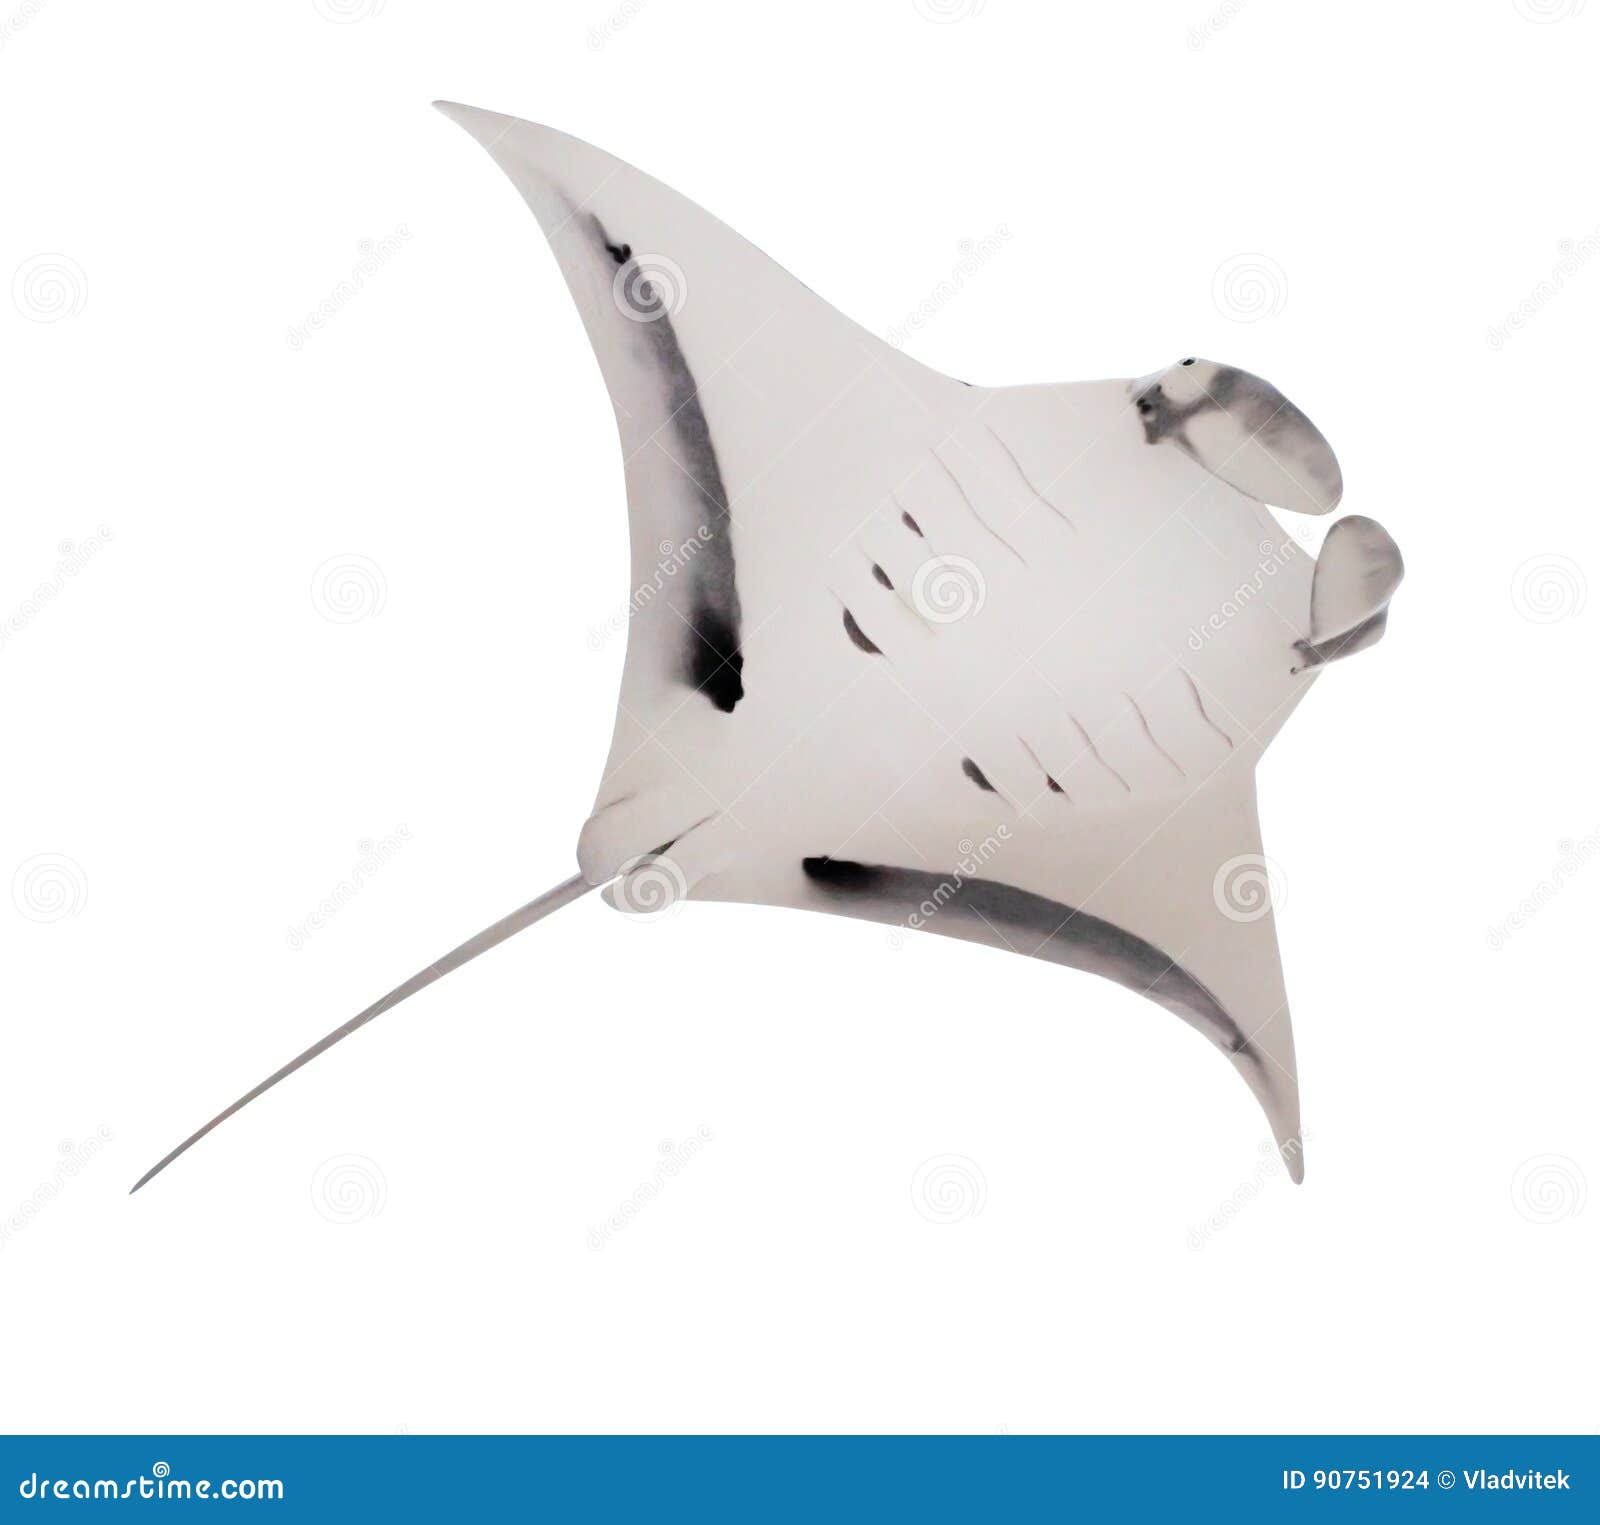 the manta ray.